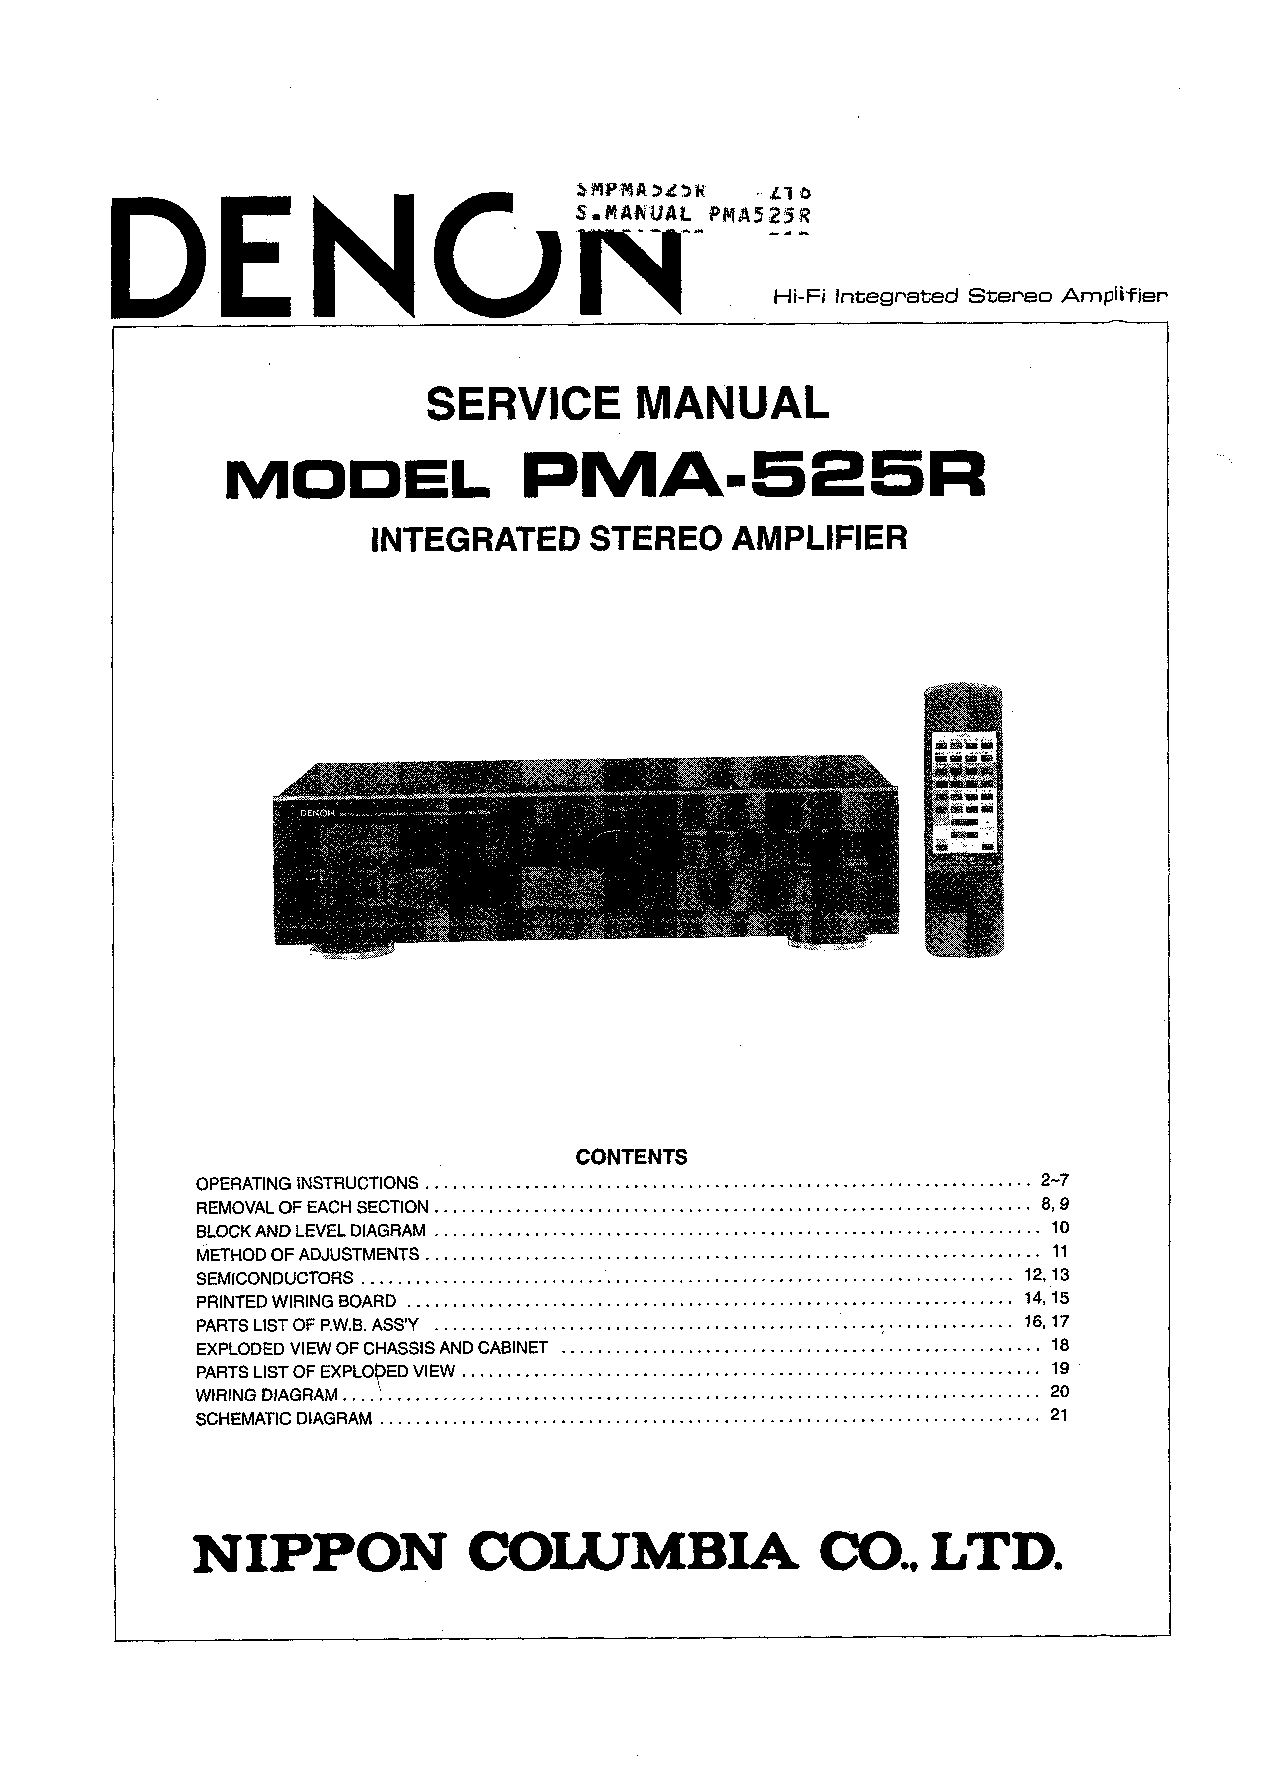 Denon PMA-525R Service Manual